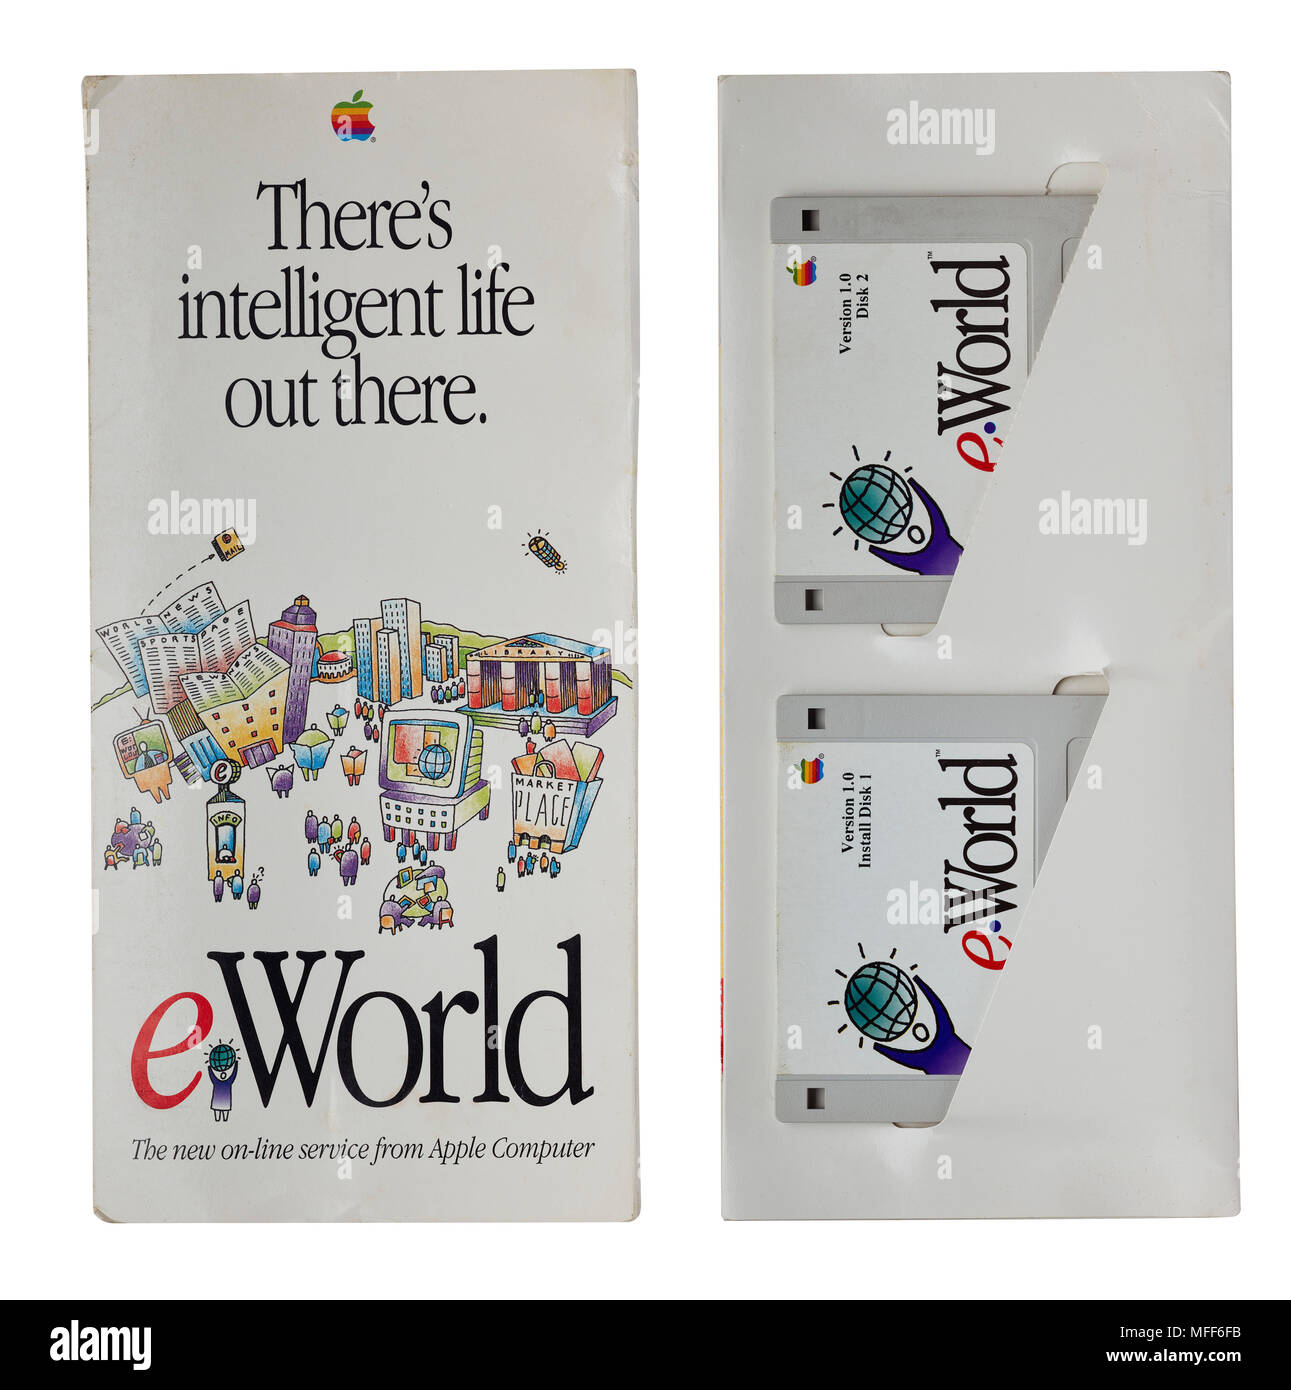 Cubierta original e interior mostrando los disquetes de instalación de software eWorld de Apple, lanzado en junio de 1994 Foto de stock